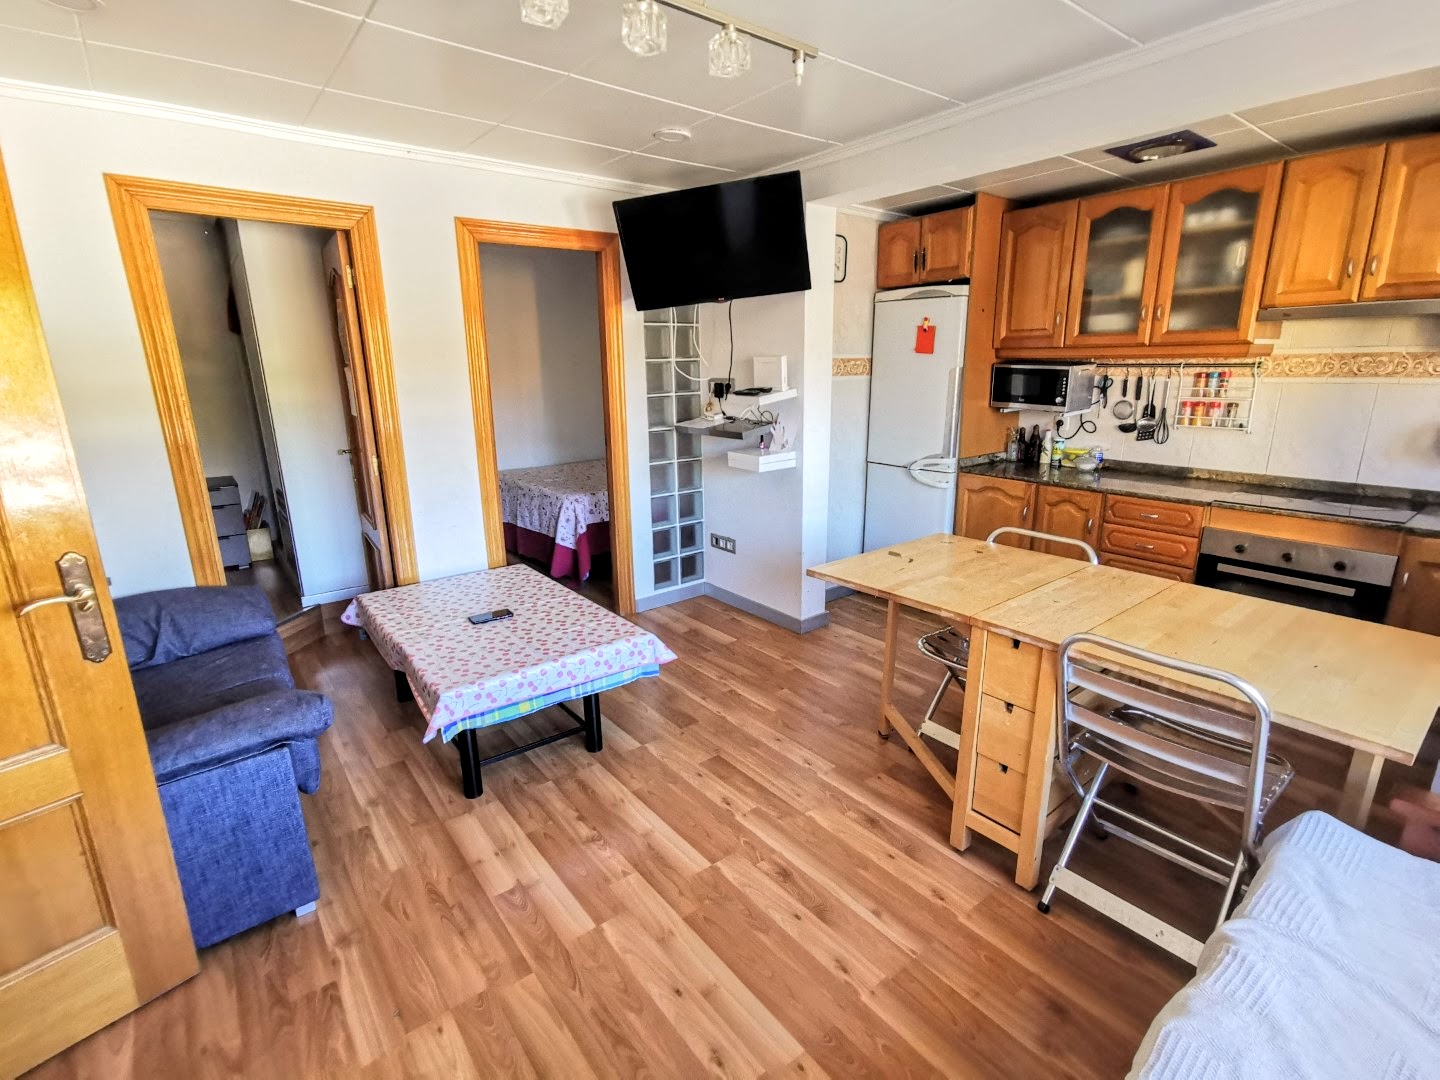 Apartamento único de 10 dormitorios en venta a poca distancia de la playa